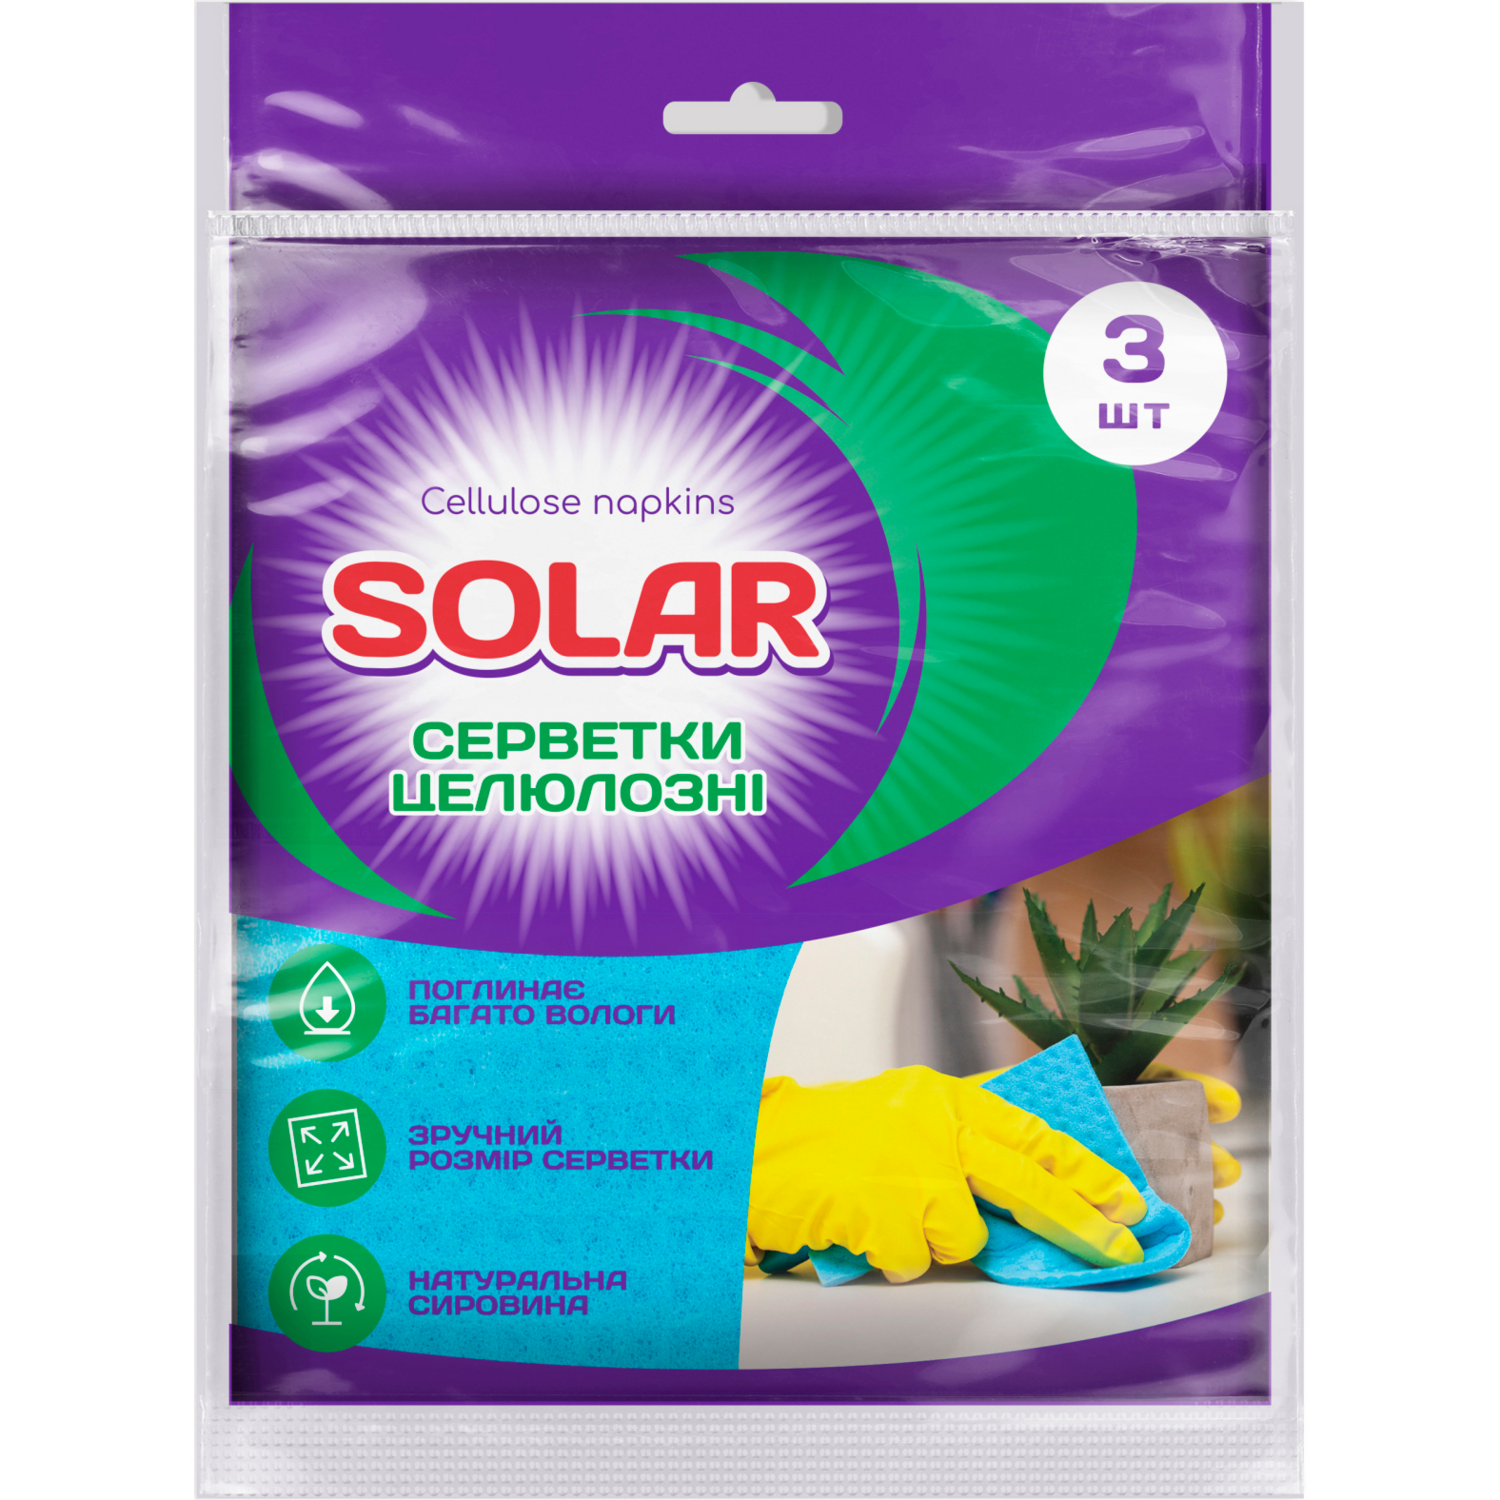 Салфетки для уборки целлюлозные Solar влагопоглащающие 3шт фото 